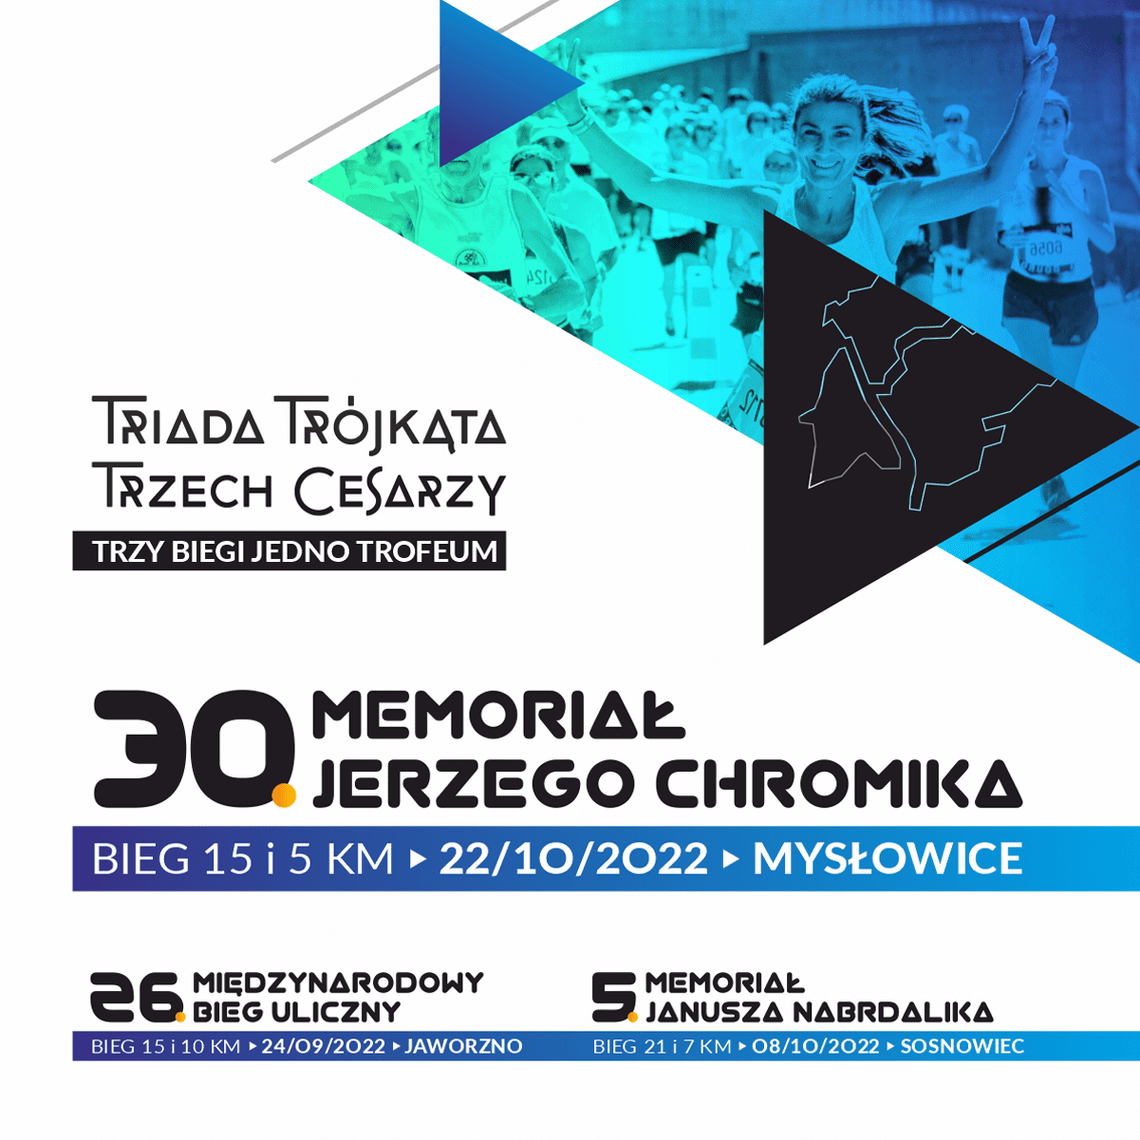 30 Memoriał Jerzego Chromika w ramach Triady Trójkąta Trzech Cesarzy – Bieg uliczny z historią 